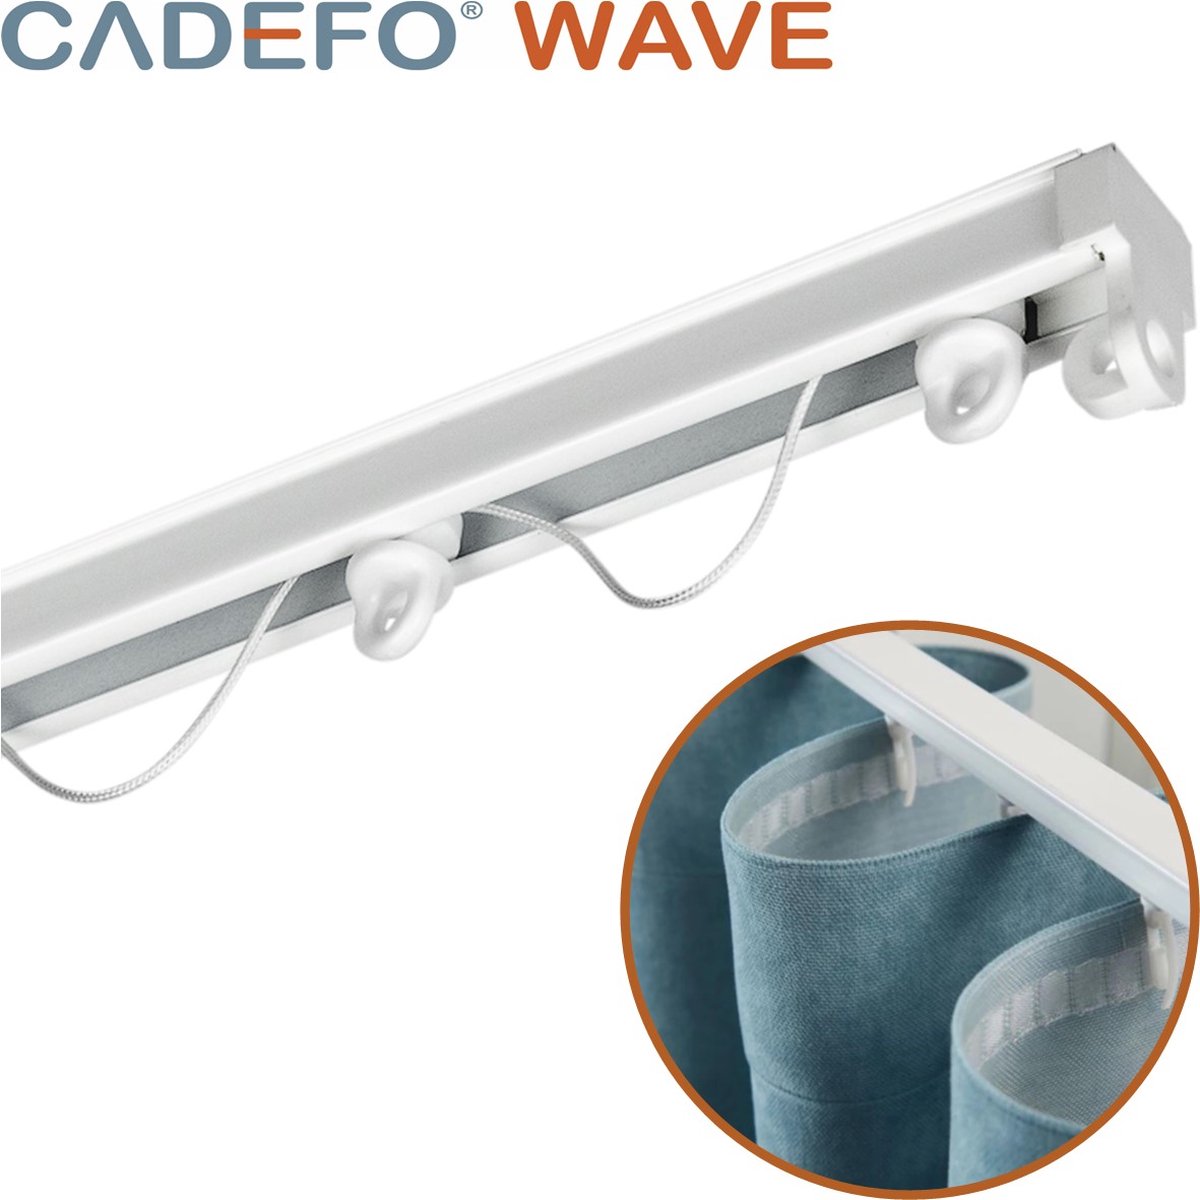 CADEFO WAVE (151 - 200 cm) Gordijnrails - Compleet op maat! - UIT 1 STUK - Leverbaar tot 6 meter - Plafondbevestiging - Lengte 160 cm